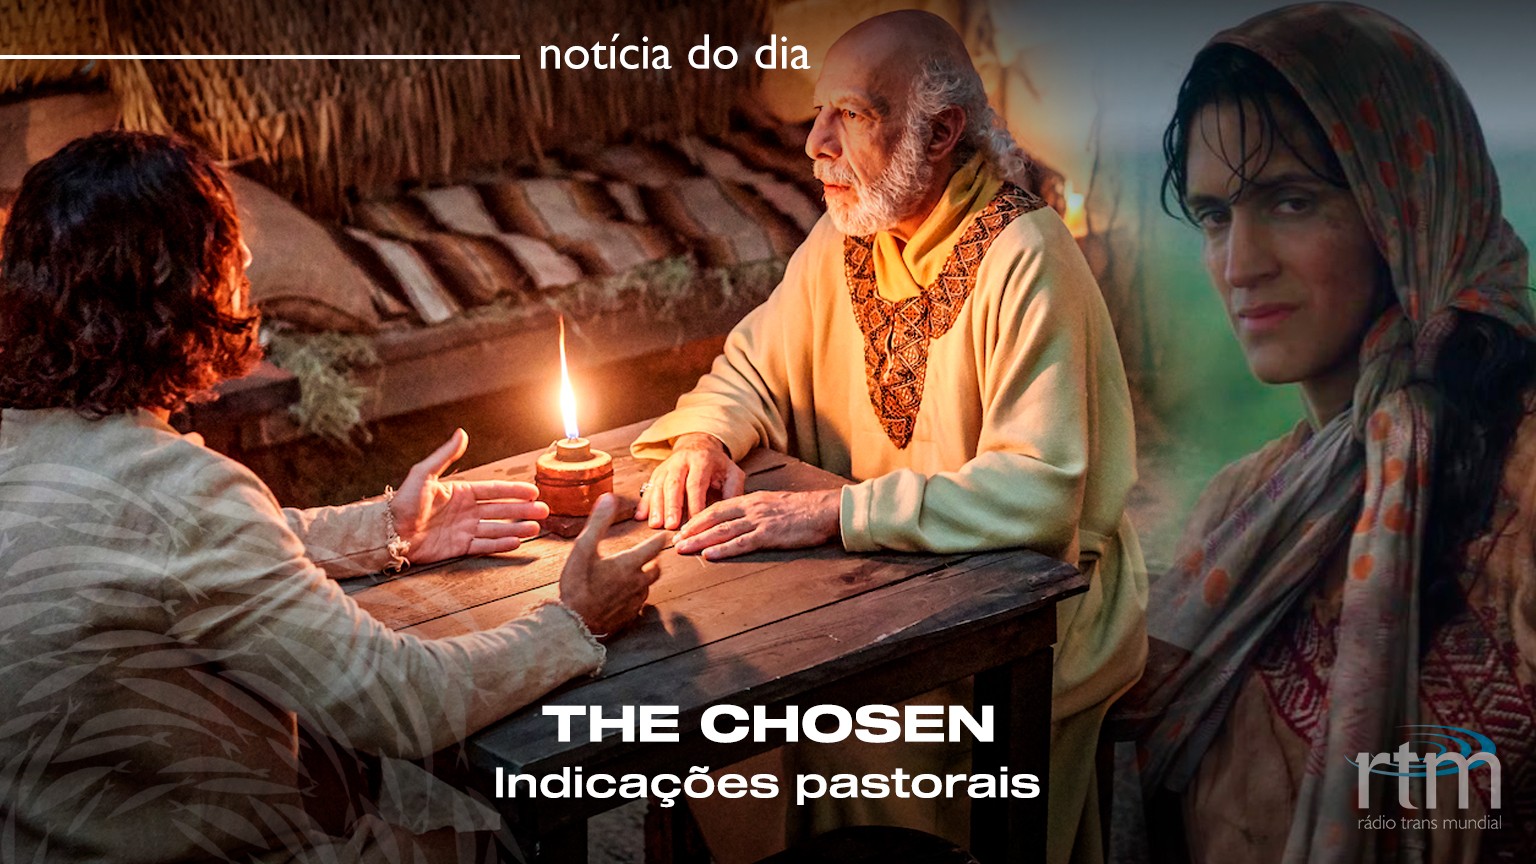 Crítica em Vídeo, The Chosen: Série Cristã sobre Jesus e os apóstolos  surpreende nas bilheterias brasileiras